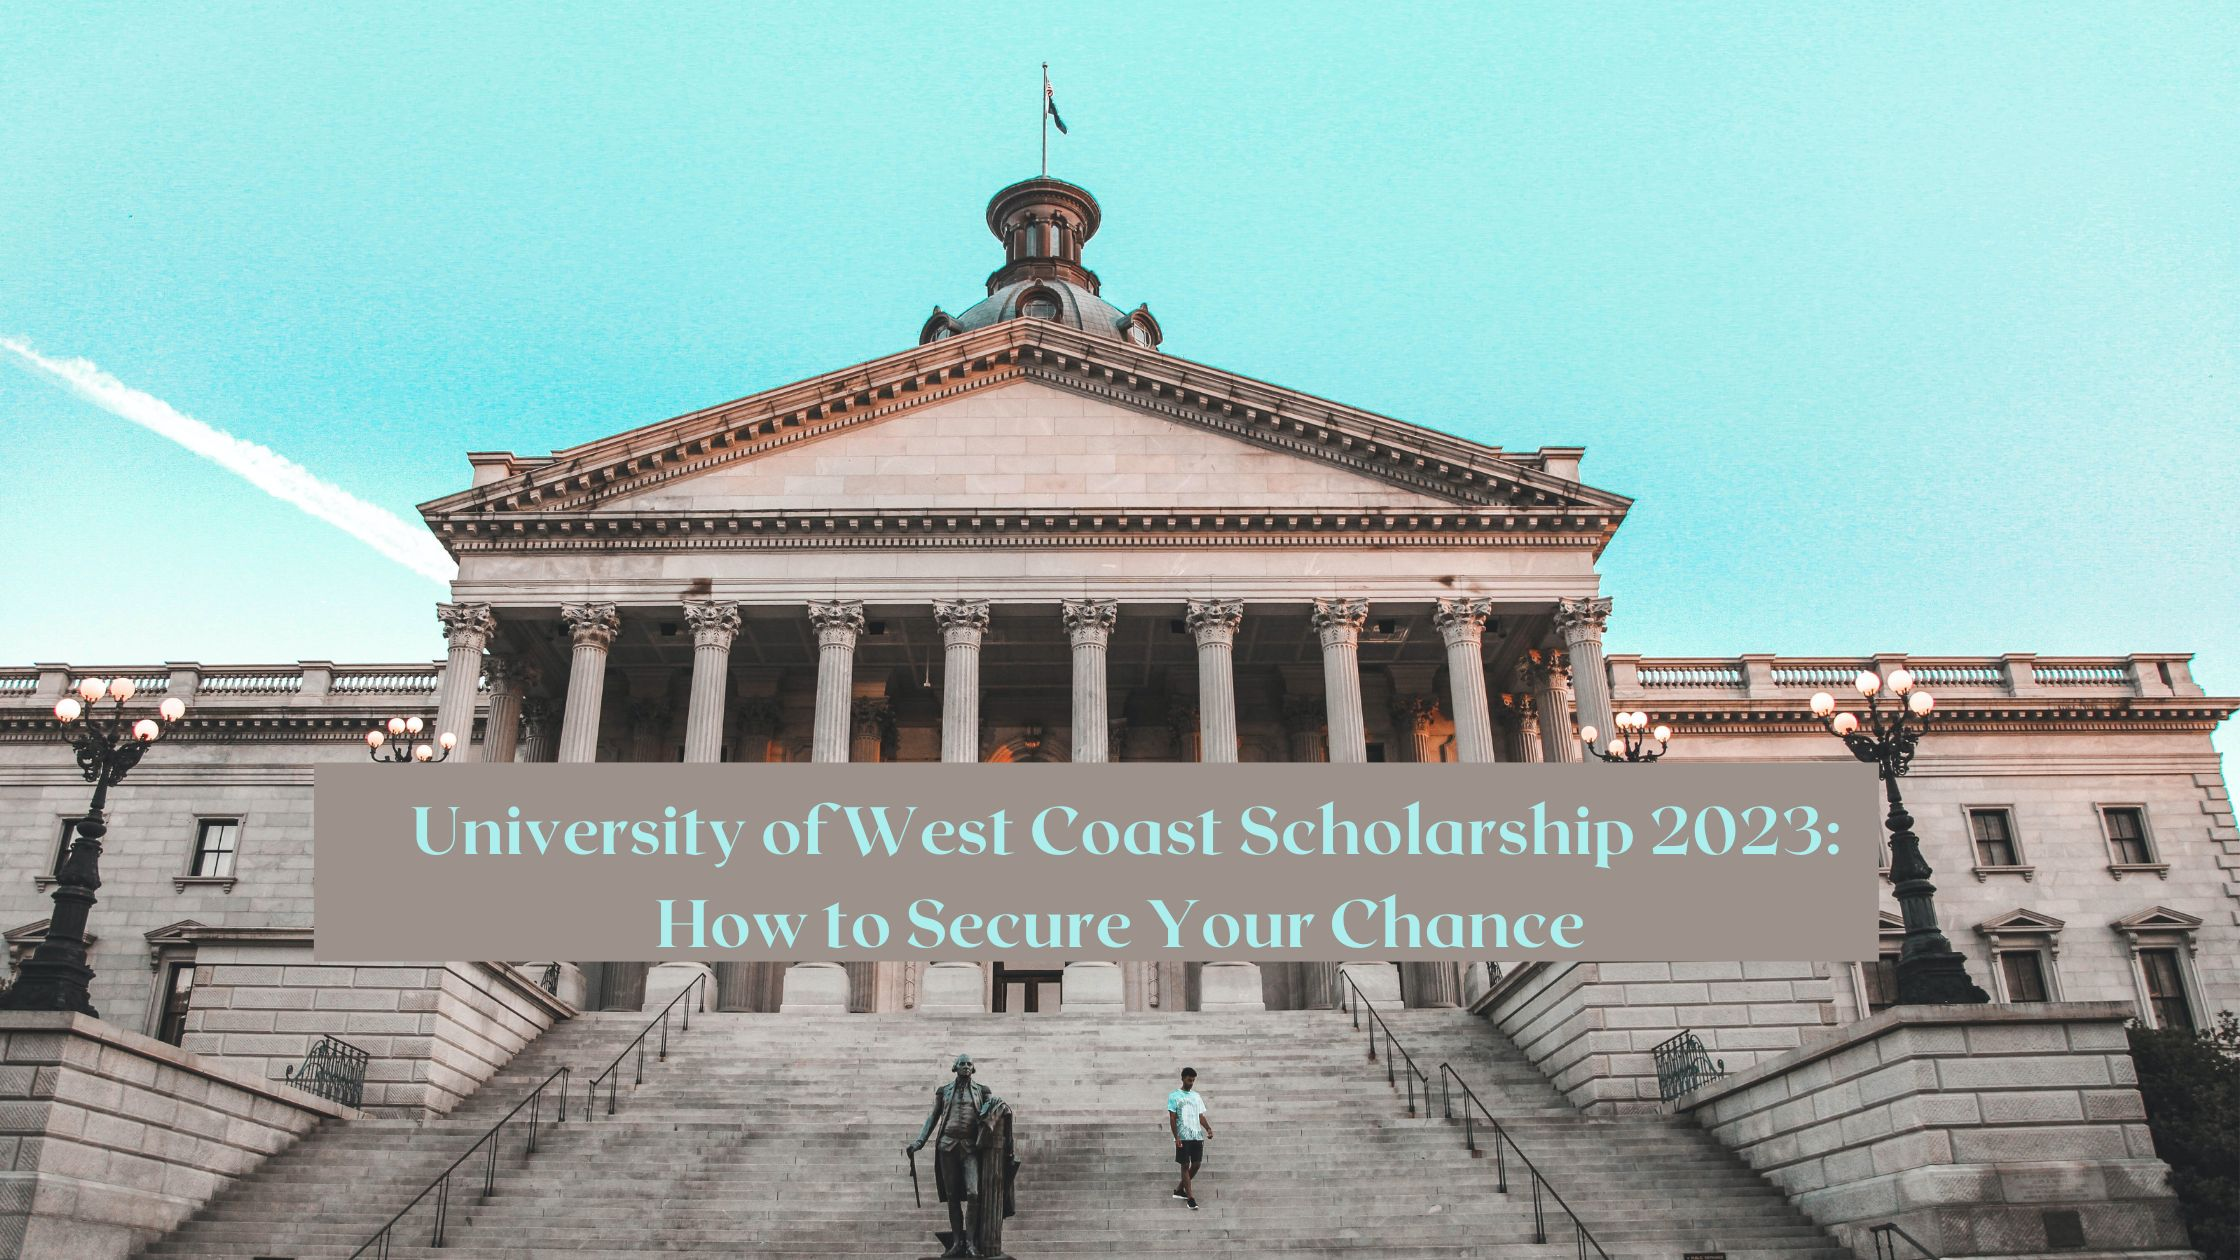 University of West Coast Scholarship 2023